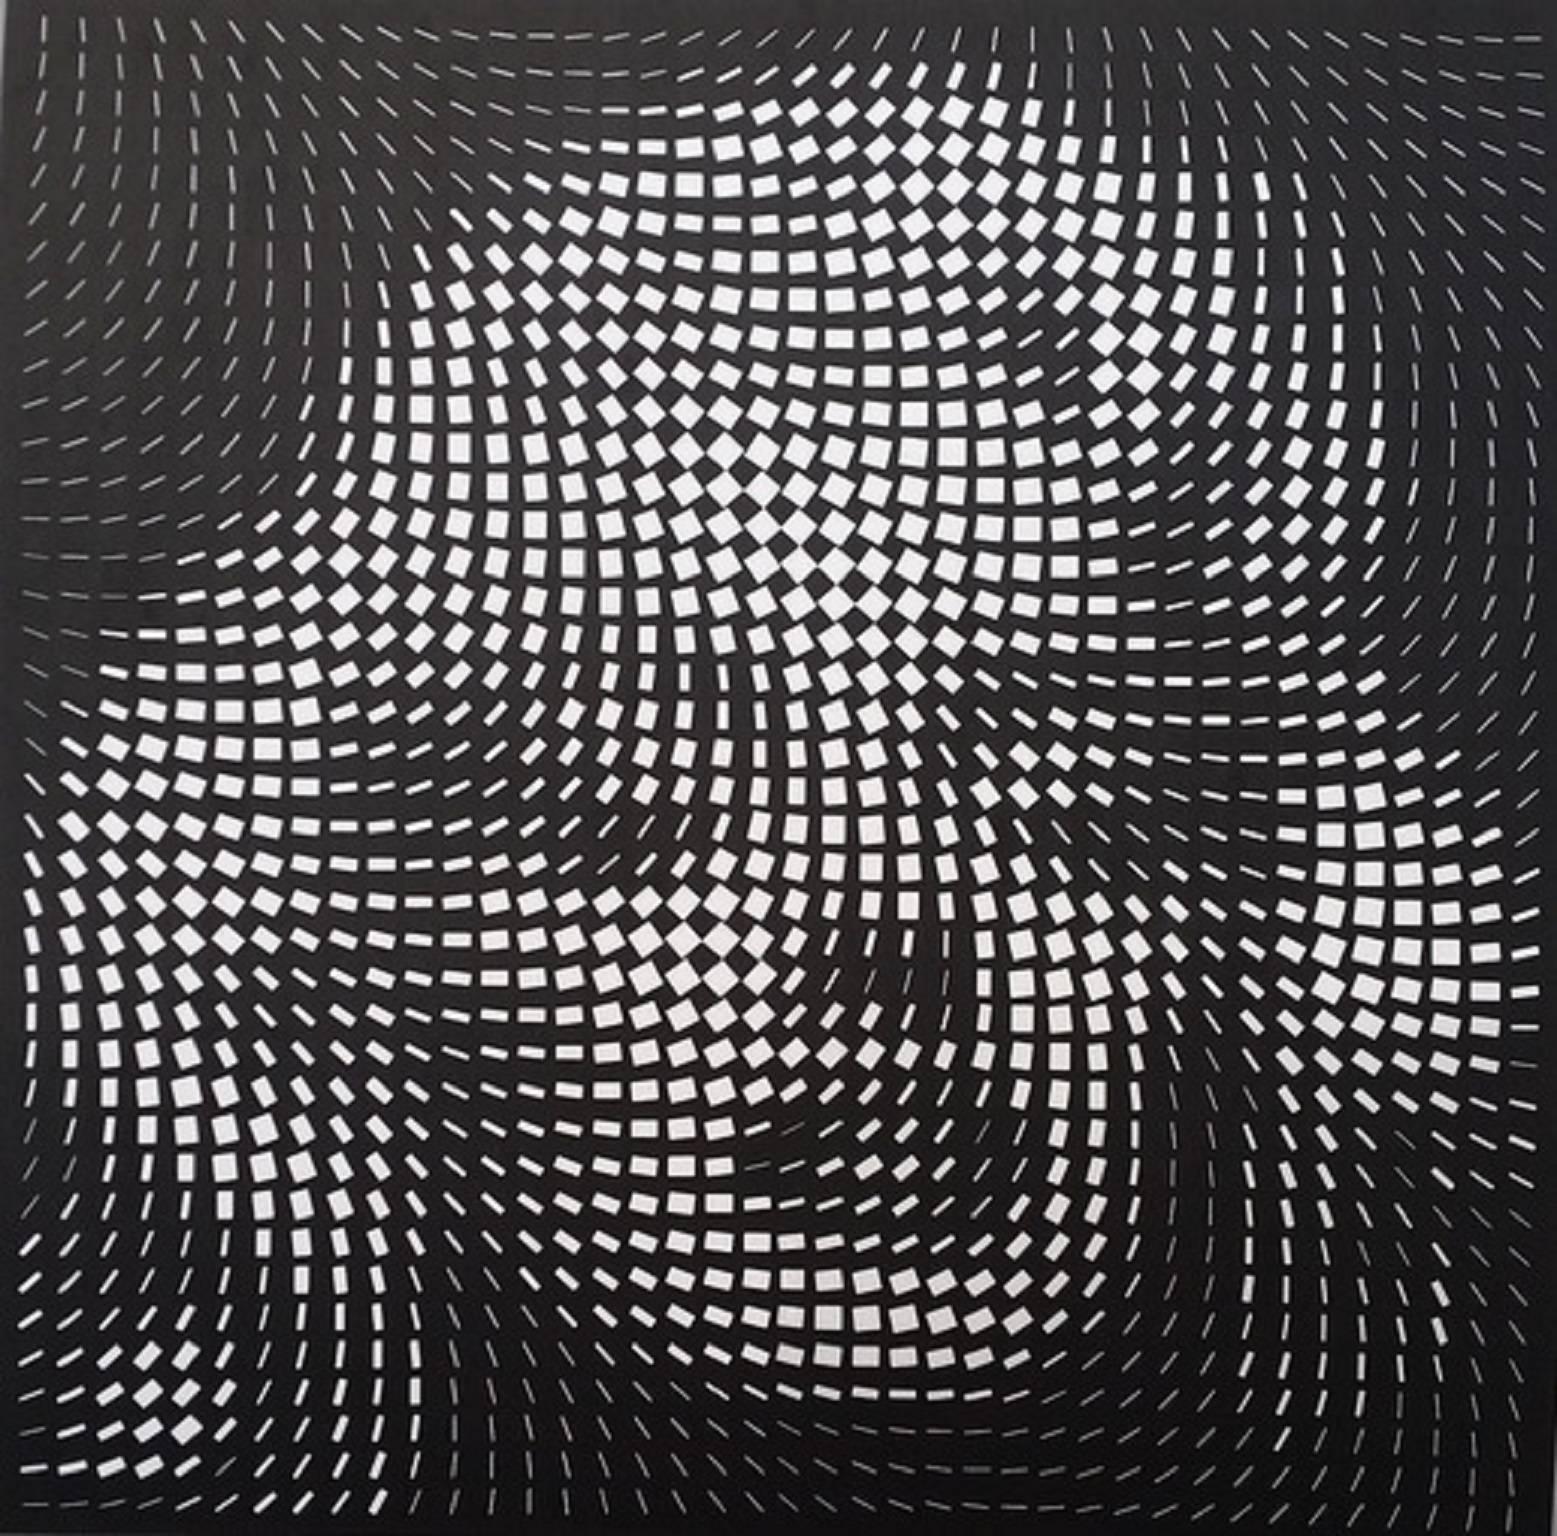 Yvaral (Jean-Pierre Vasarely) Portrait Print - Marilyn Monroe in Black